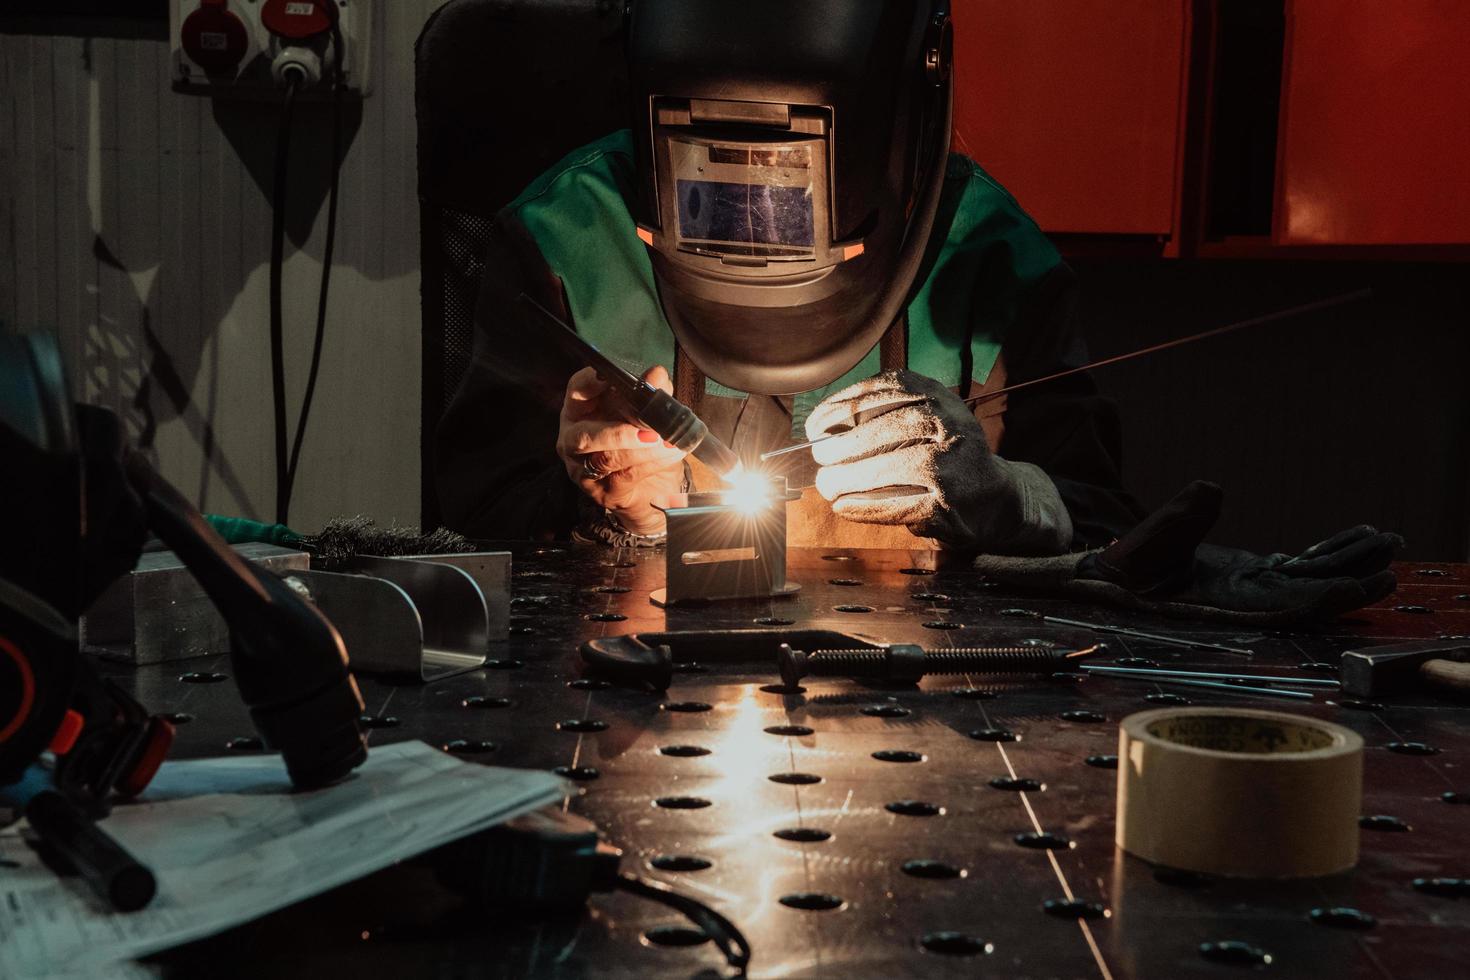 una mujer empleada en una fábrica moderna para la producción y procesamiento de metales en un uniforme de trabajo soldando materiales metálicos foto